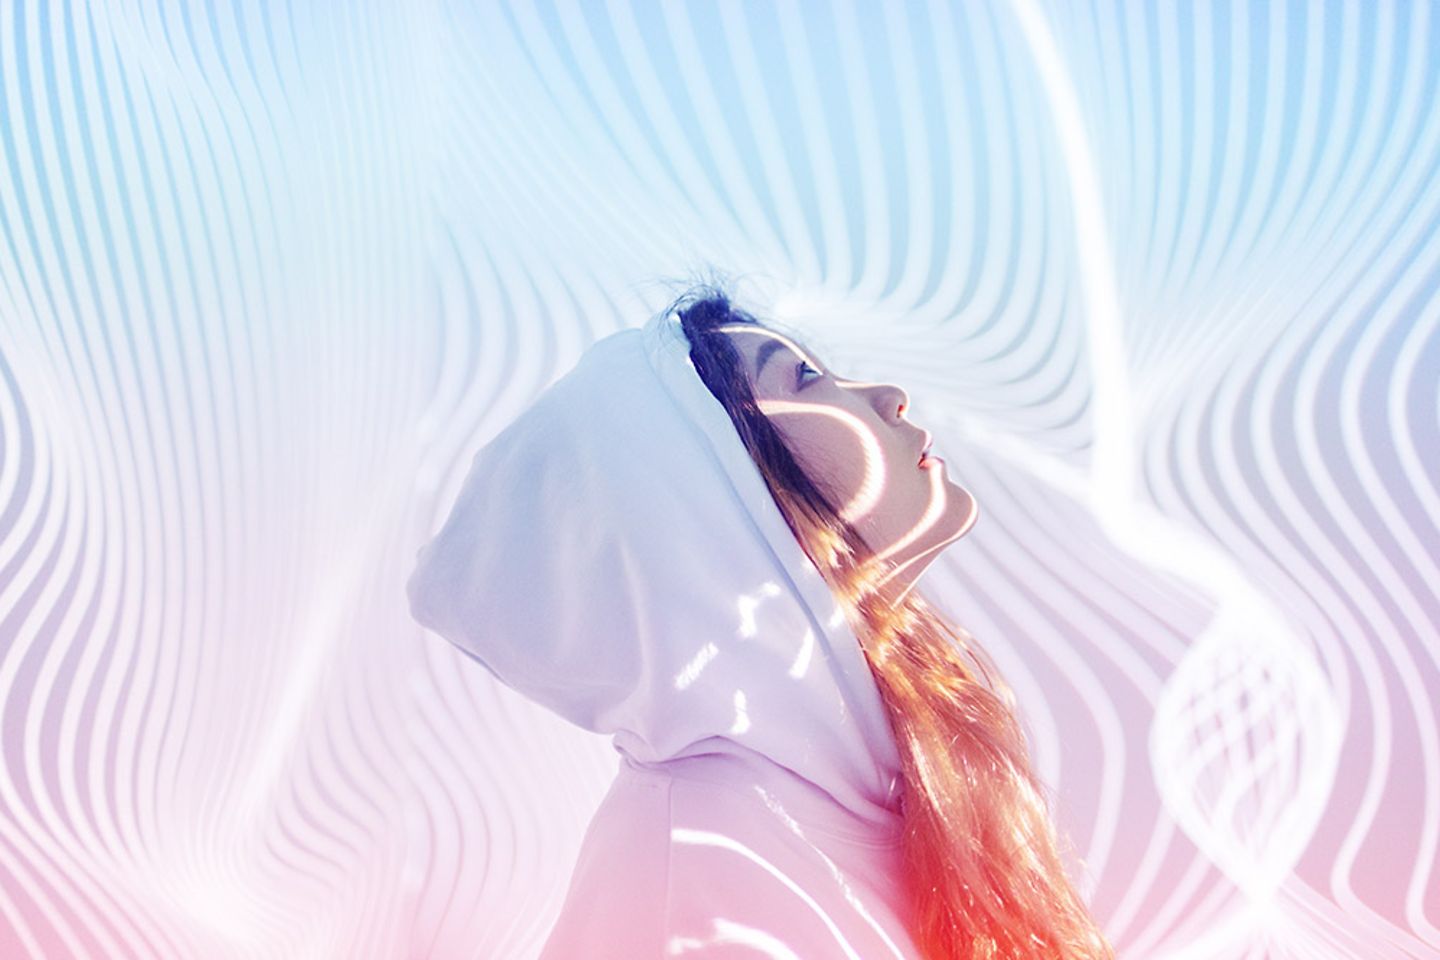 Uma jovem está na frente de um pano de fundo holográfico